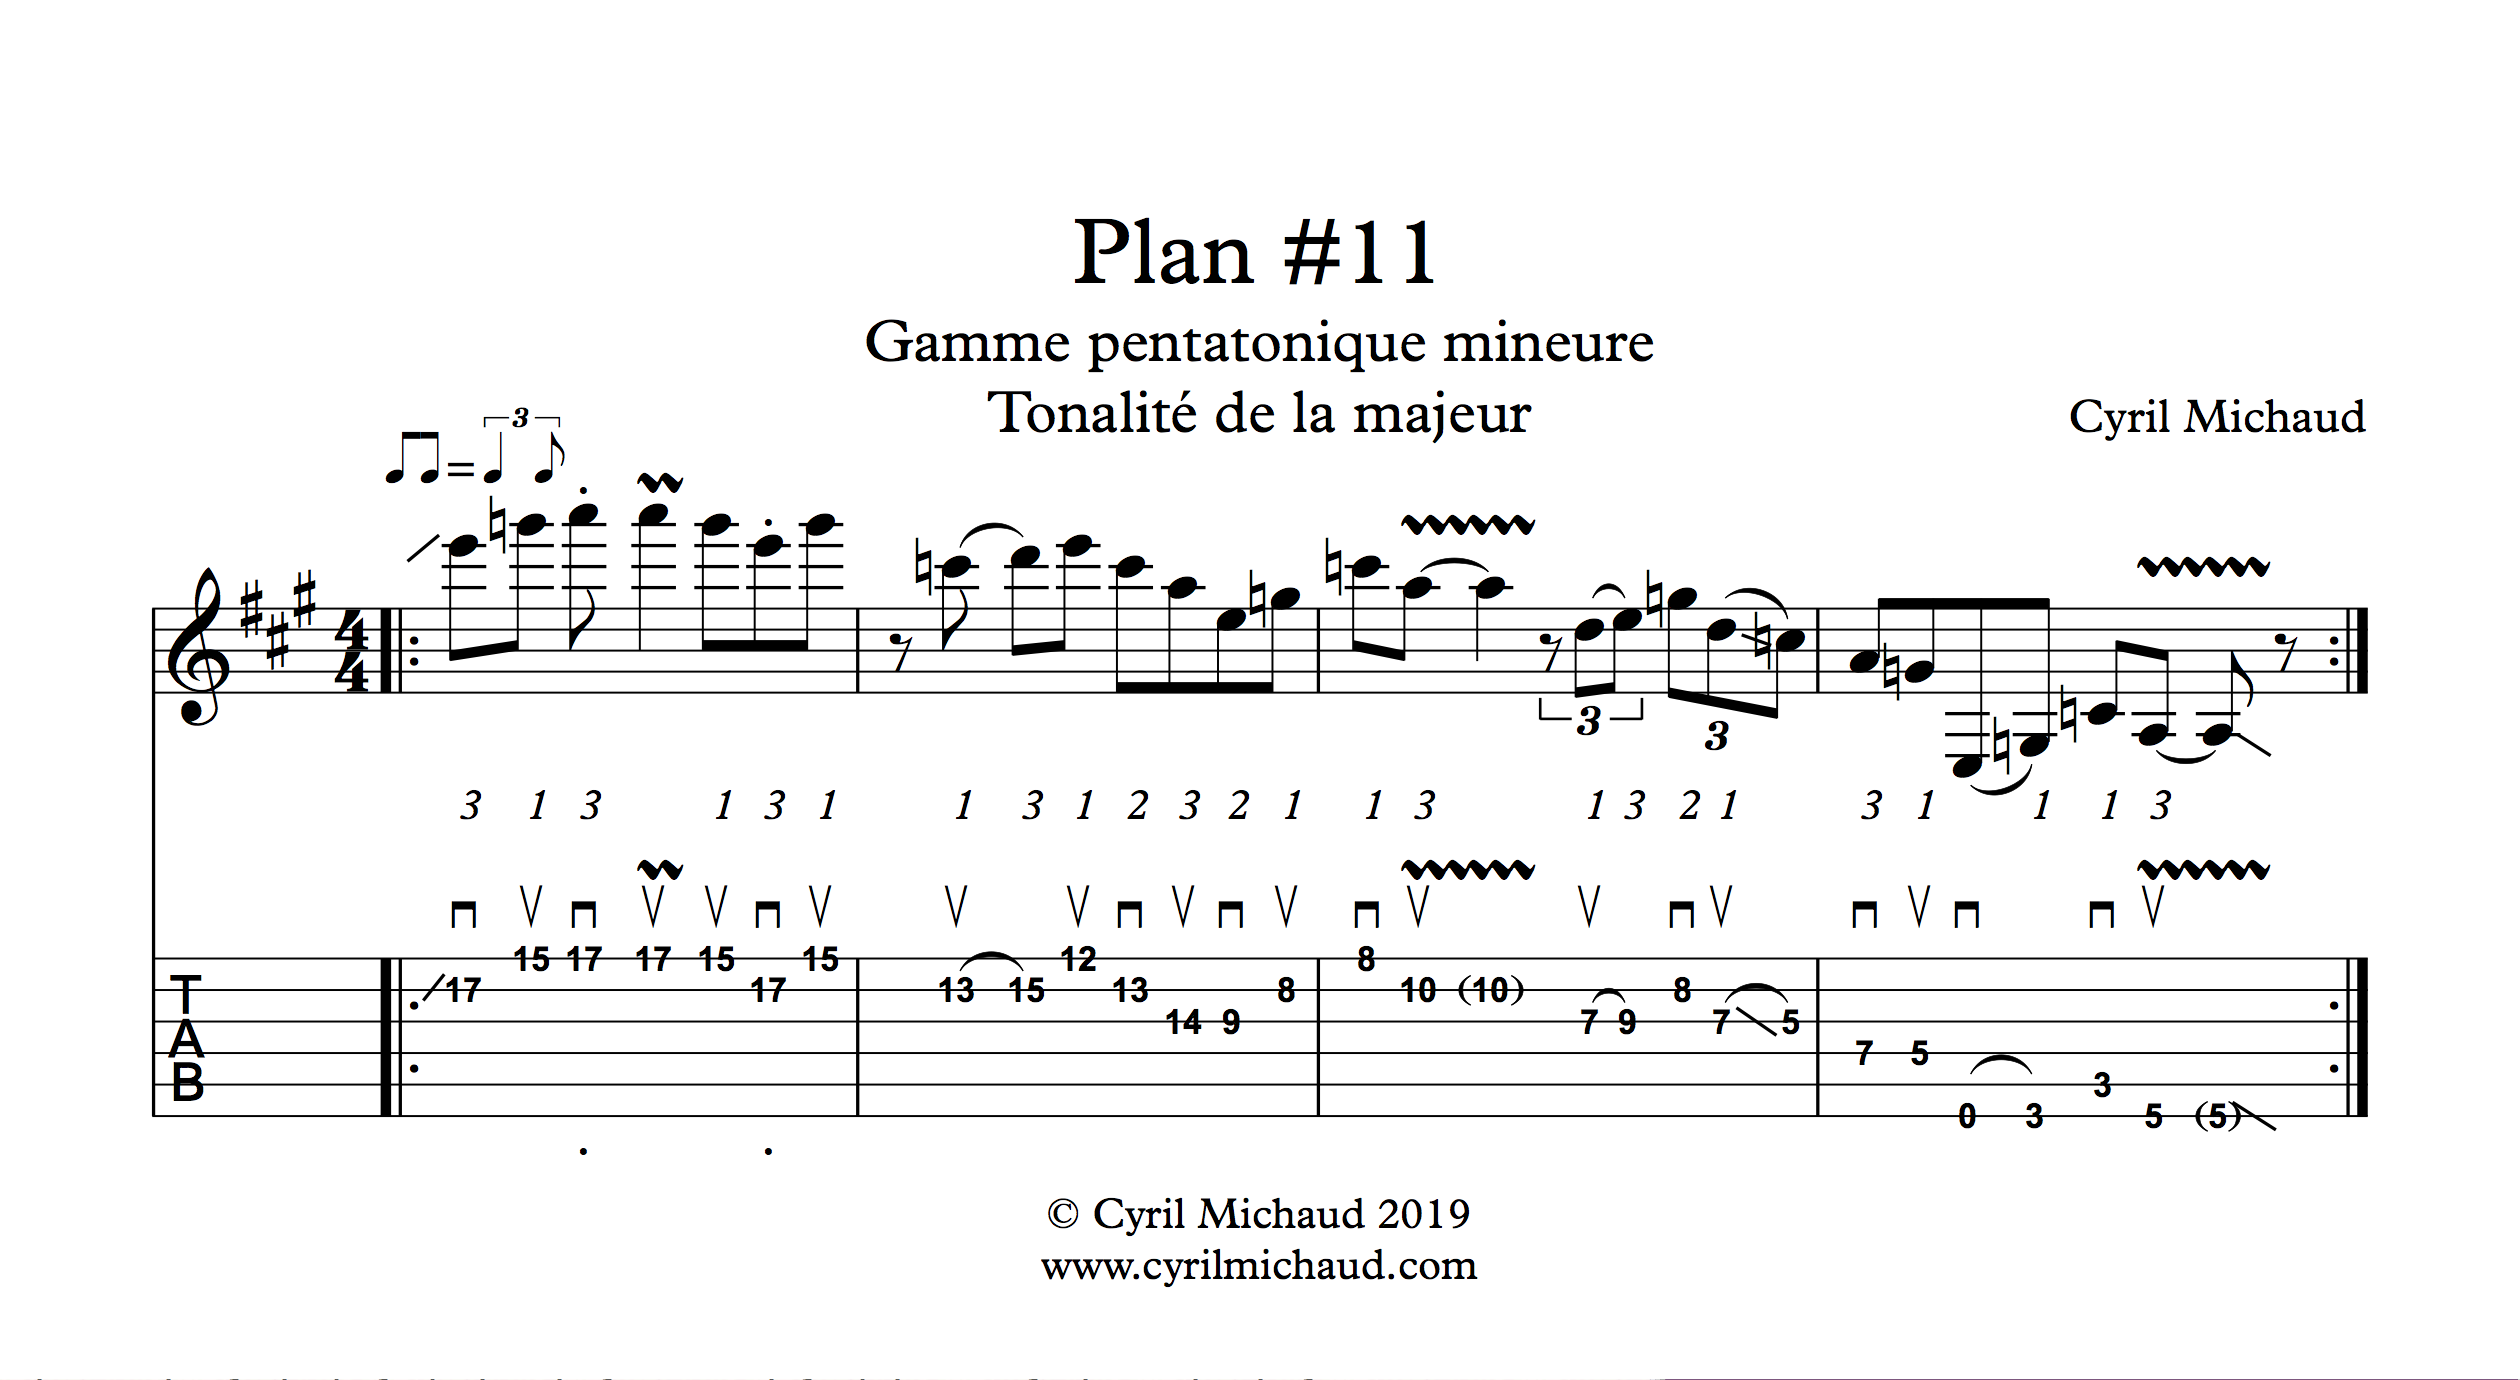 Plan blues sur la gamme pentatonique mineure (11)